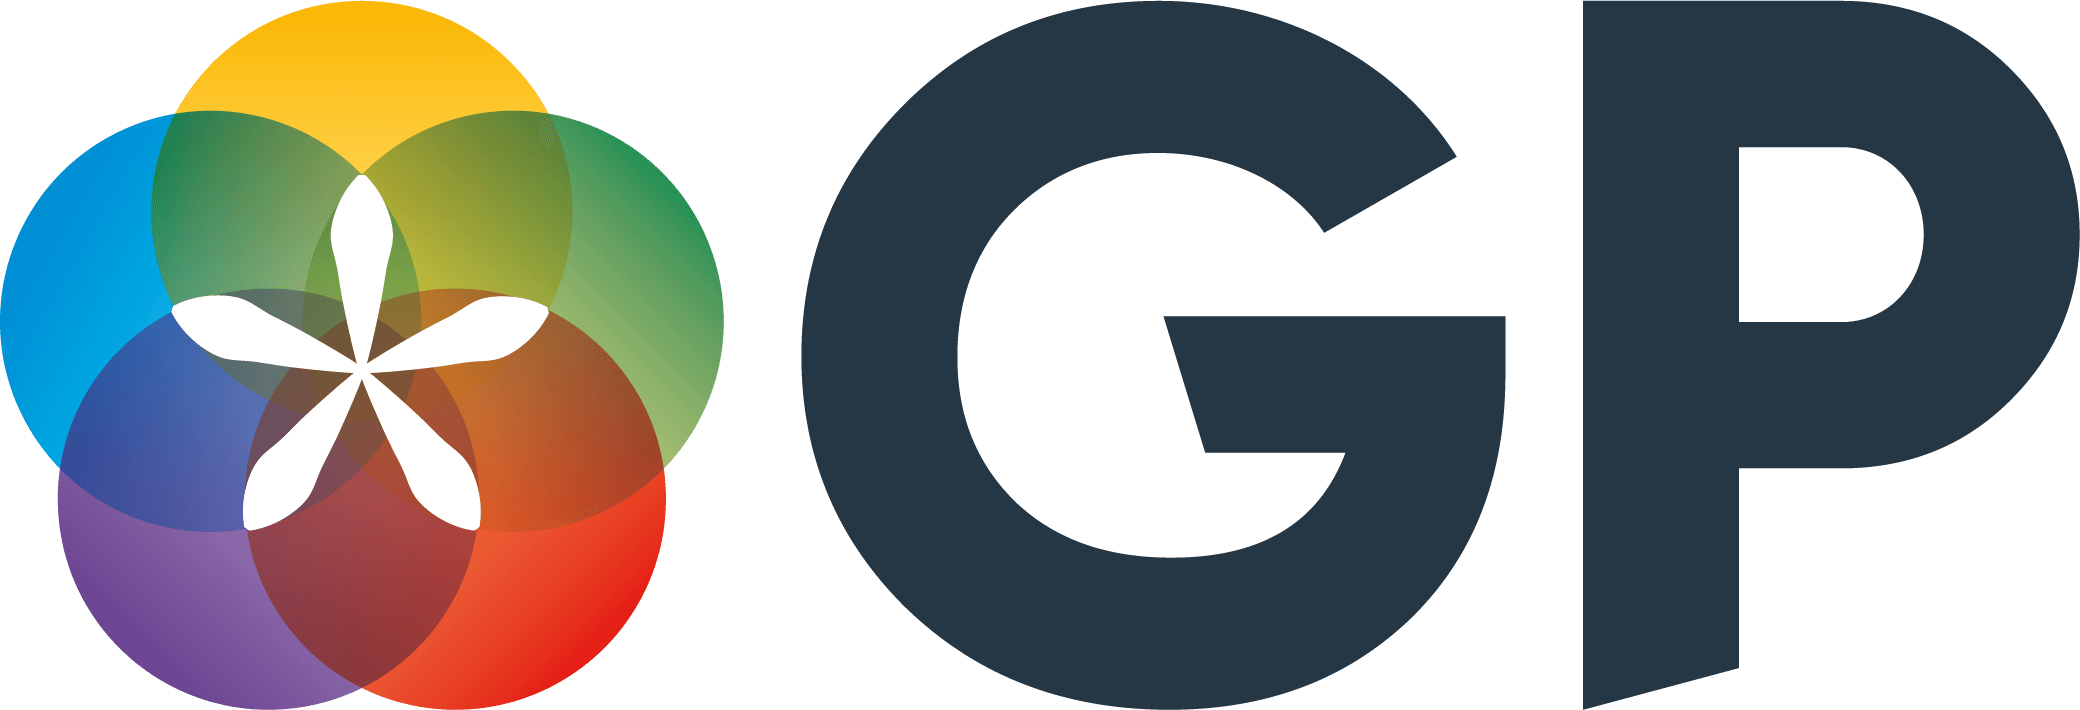 GAP Logo PNG HD Image